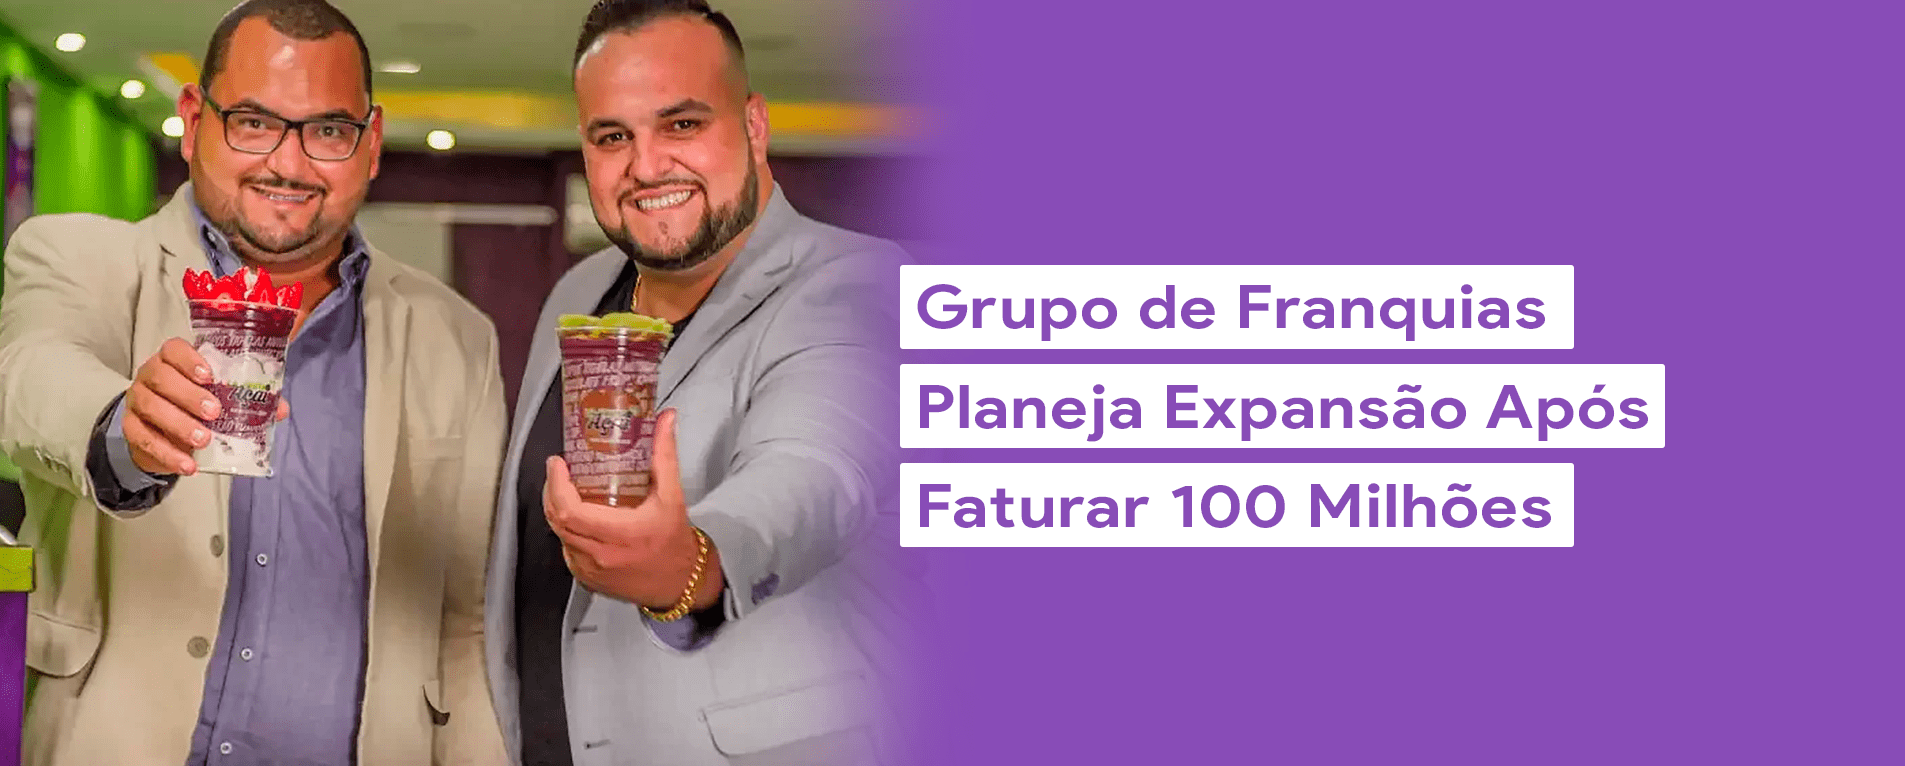 Grupo de Franquias Planeja Expansão Após Faturar R$100 Milhões